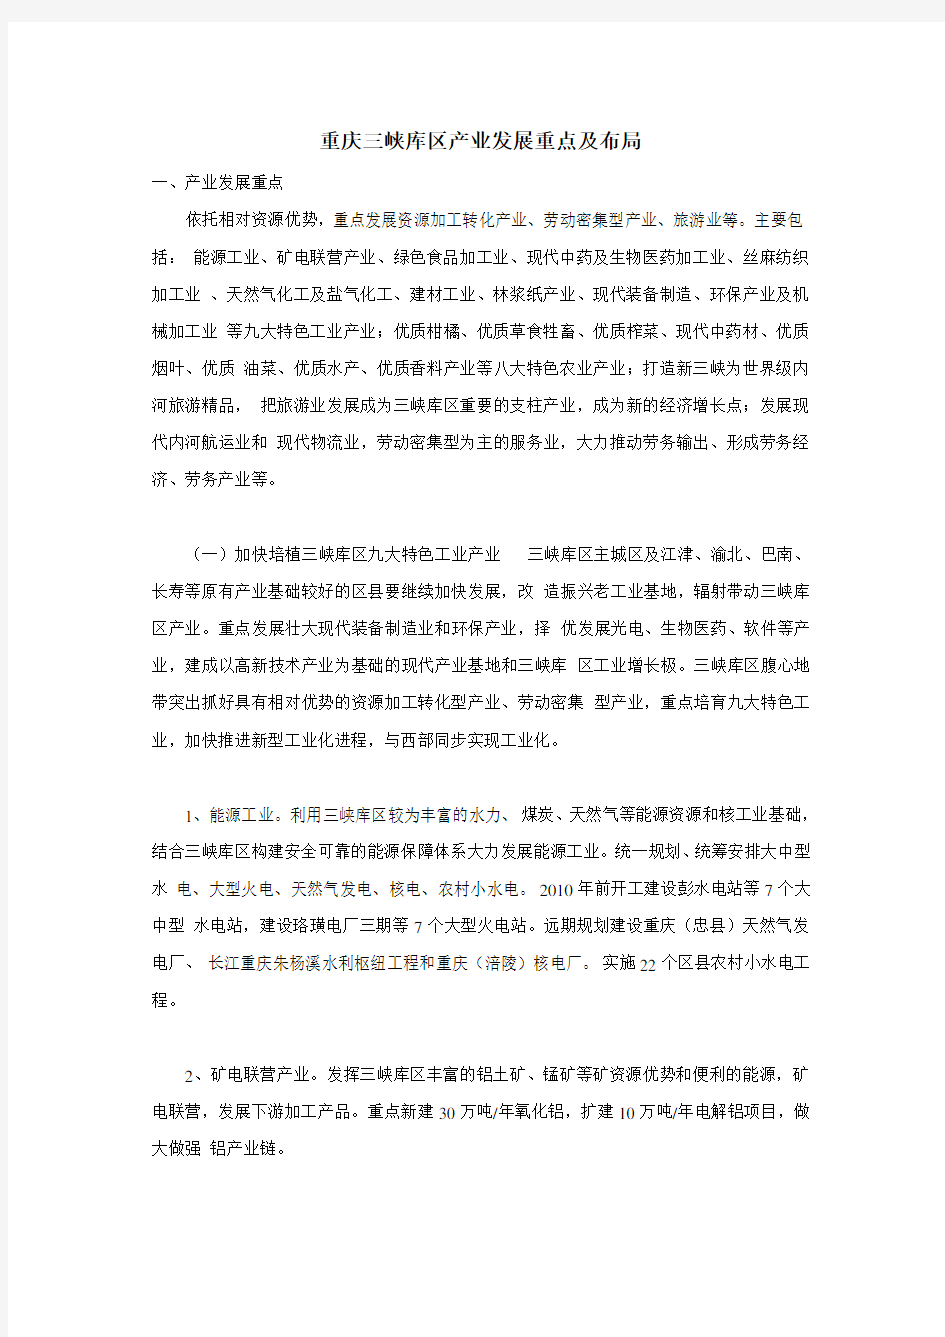 重庆三峡库区产业发展重点及布局